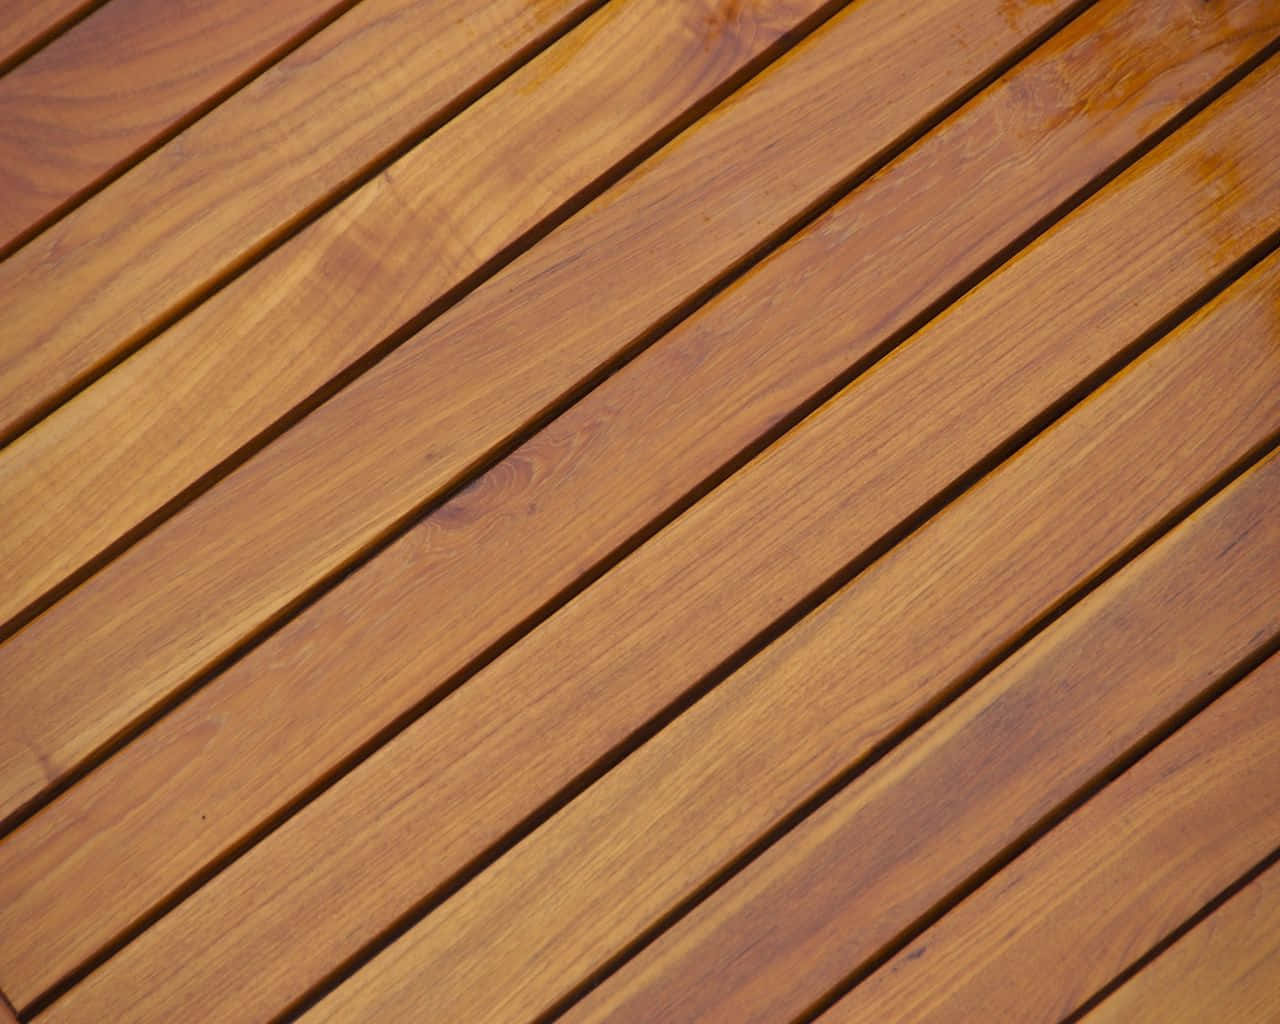 Polished Wood Arranged Diagonally Background